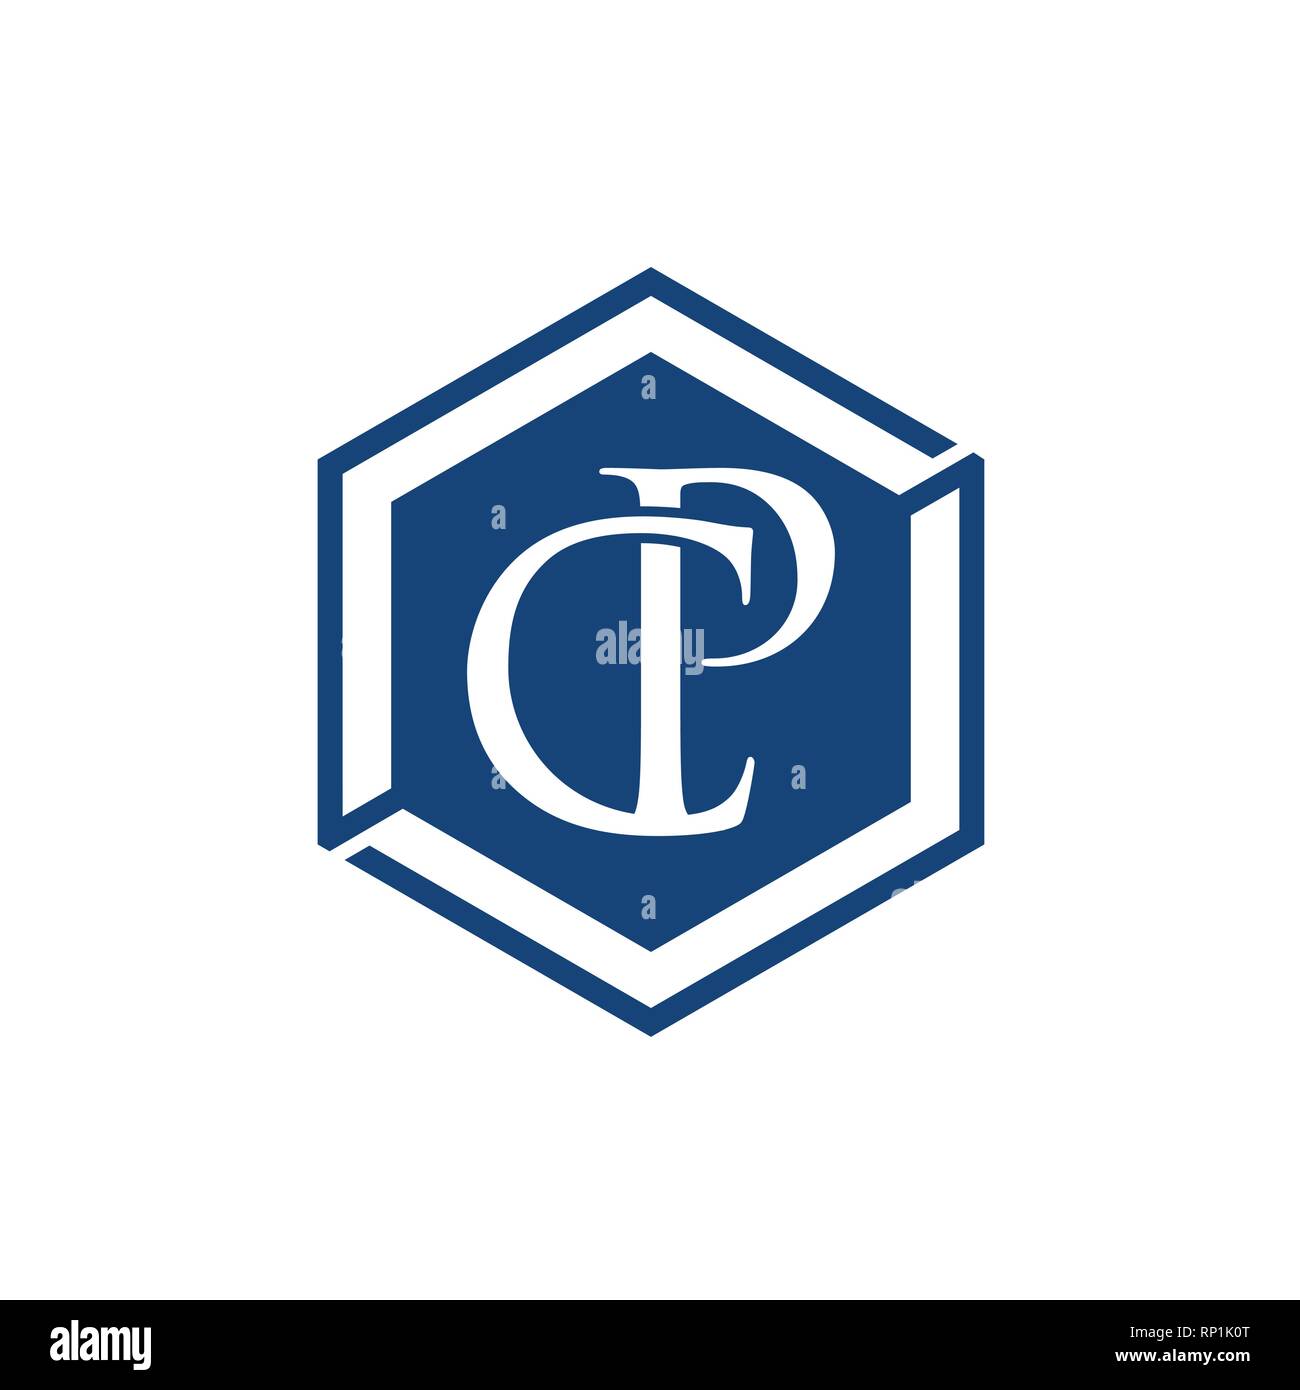 C und P schreiben Erste alphabet Logo Design Template Element. Abstrakte C und P schreiben Logo mit Sechskant Hintergrund Form Stock Vektor